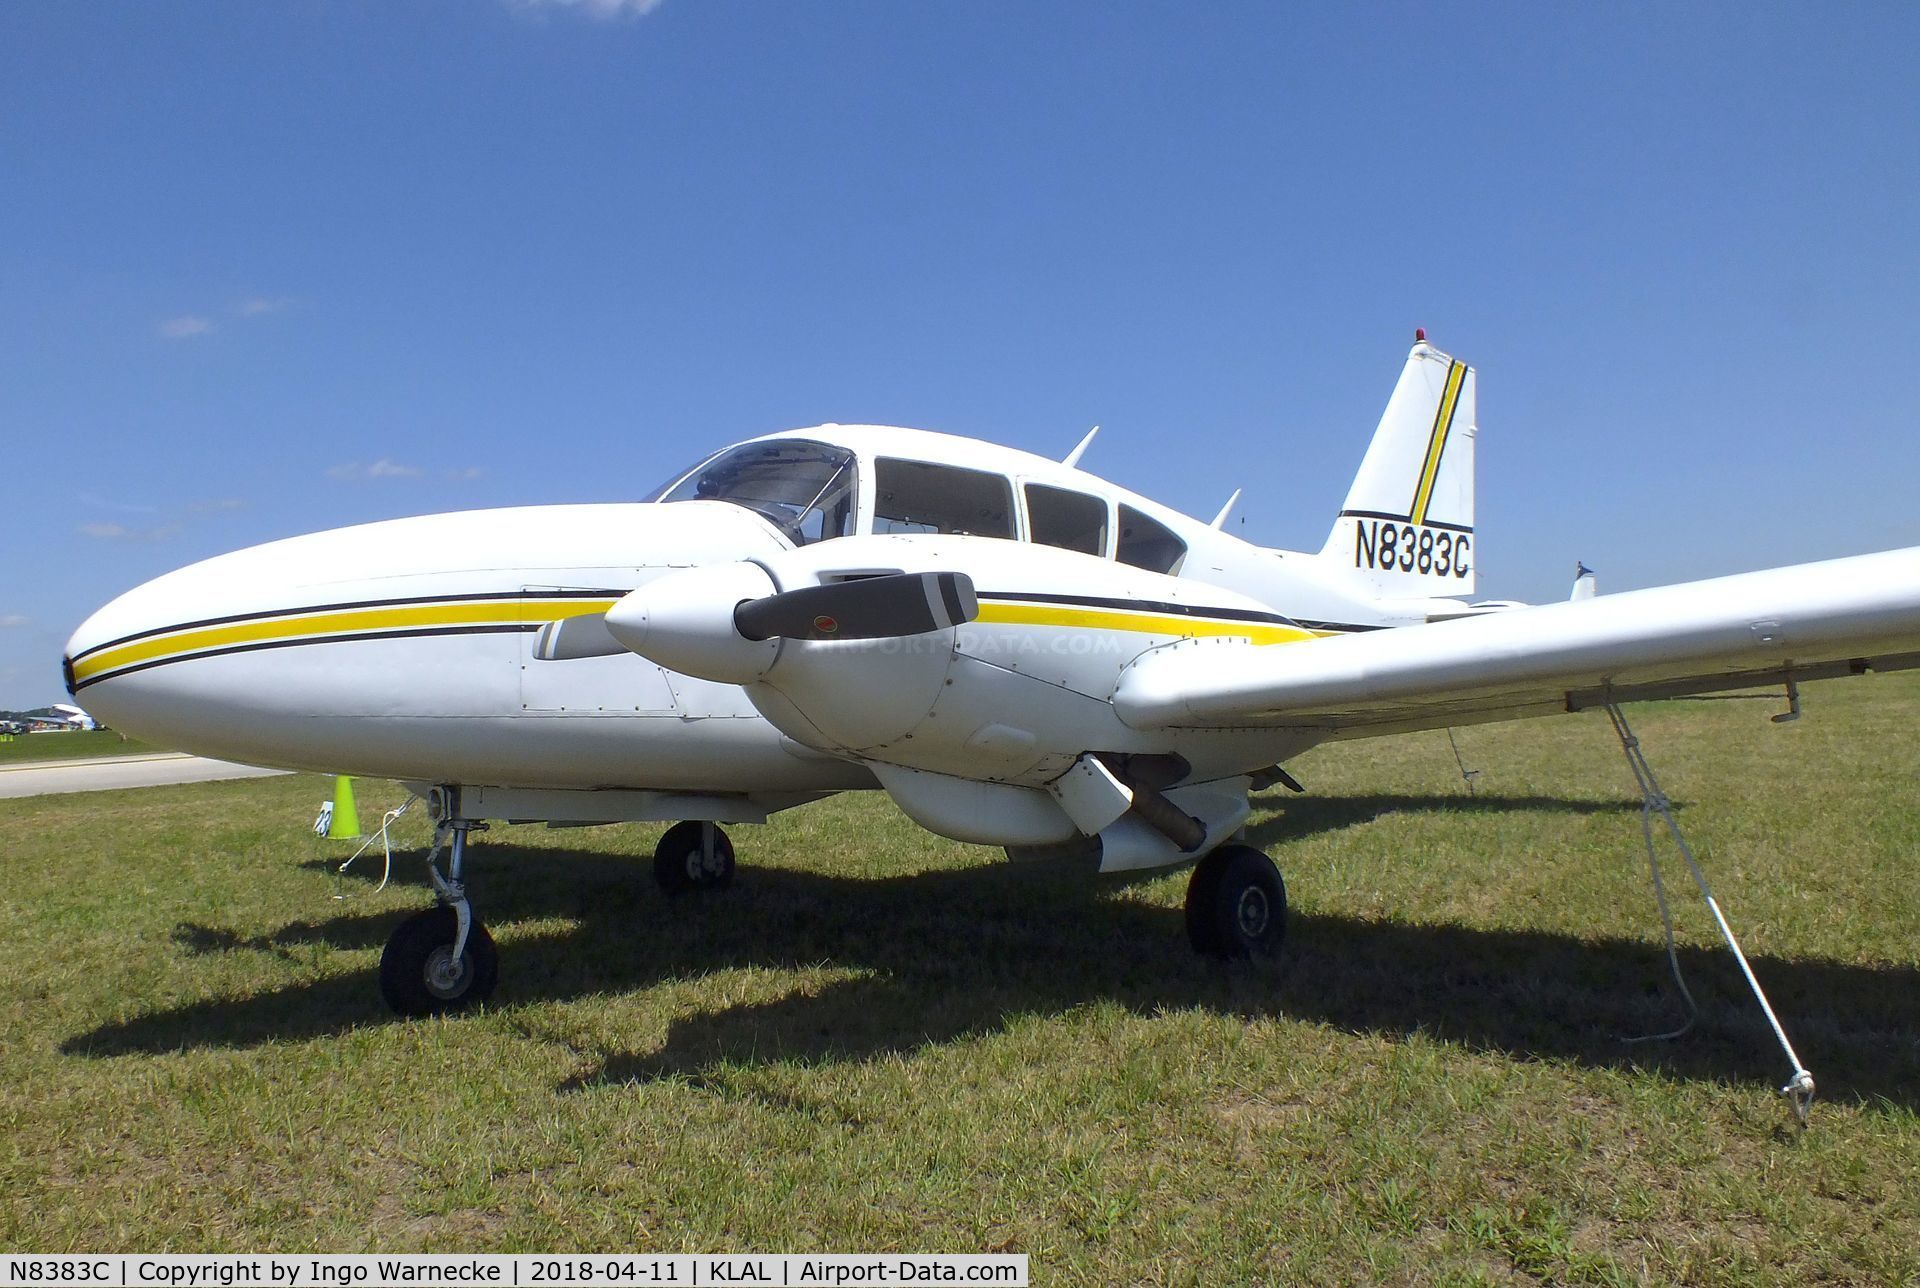 N8383C, 1970 Piper PA-23-250 C/N 27-4412, Piper PA-23-250 Aztec at 2018 Sun 'n Fun, Lakeland FL